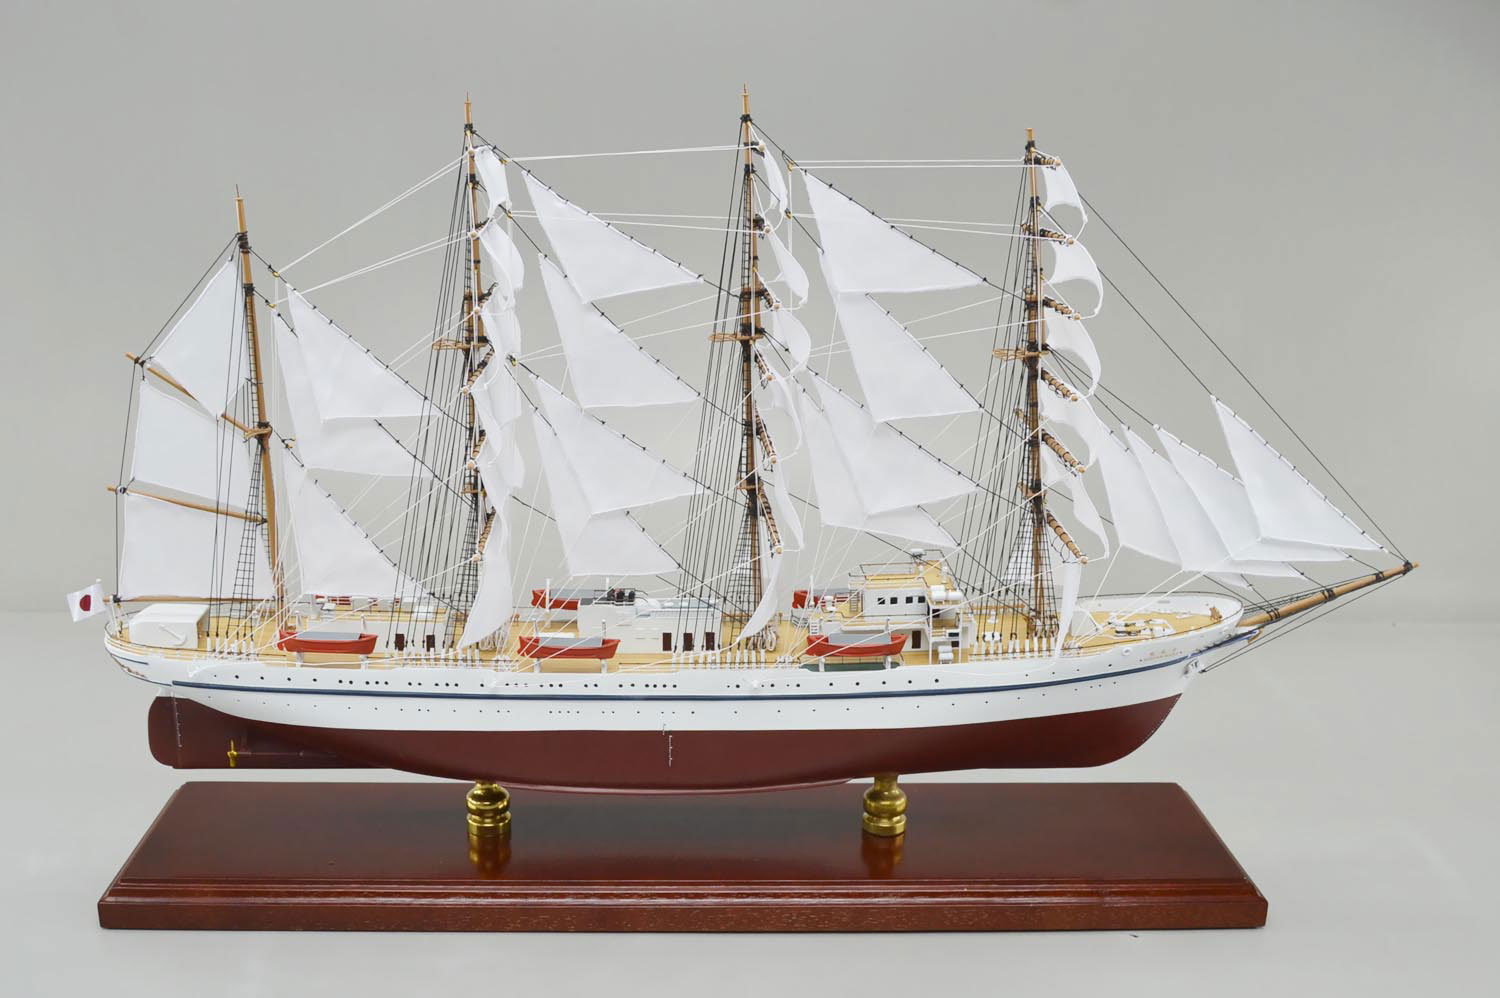 日本丸 帆船 精密帆船模型 ハンドメイド木製帆船模型、精密模型製作・販売の専門店 ウッドマンクラブ